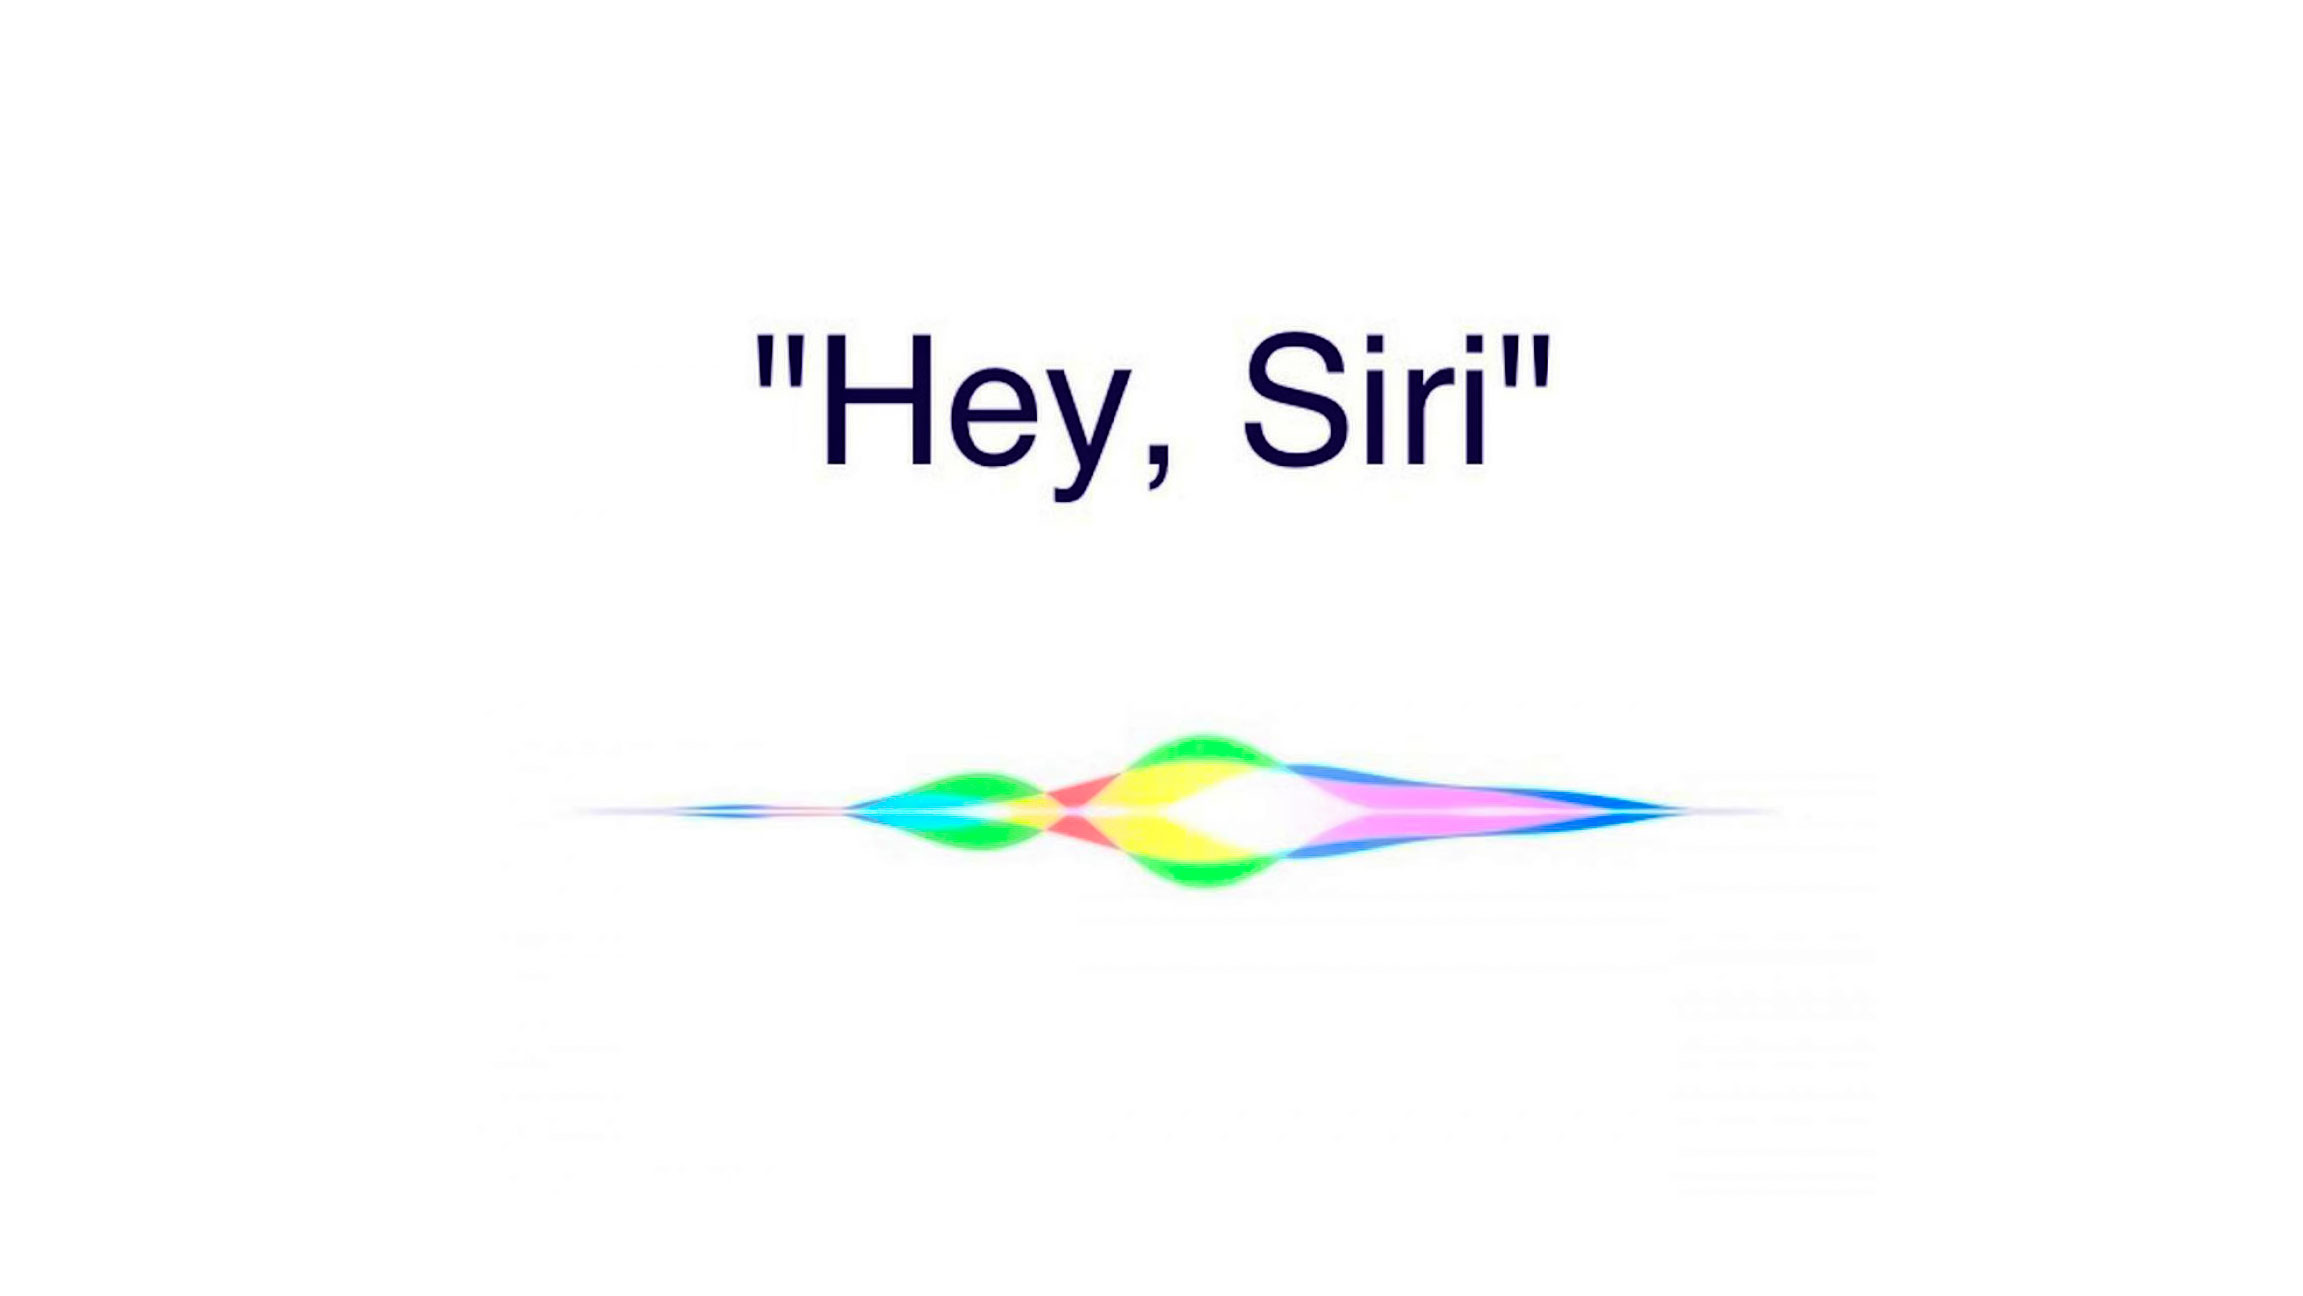 دستیار هوشمند اپل یعنی سیری به مکالمات شما گوش می دهد و اپل این را می داند